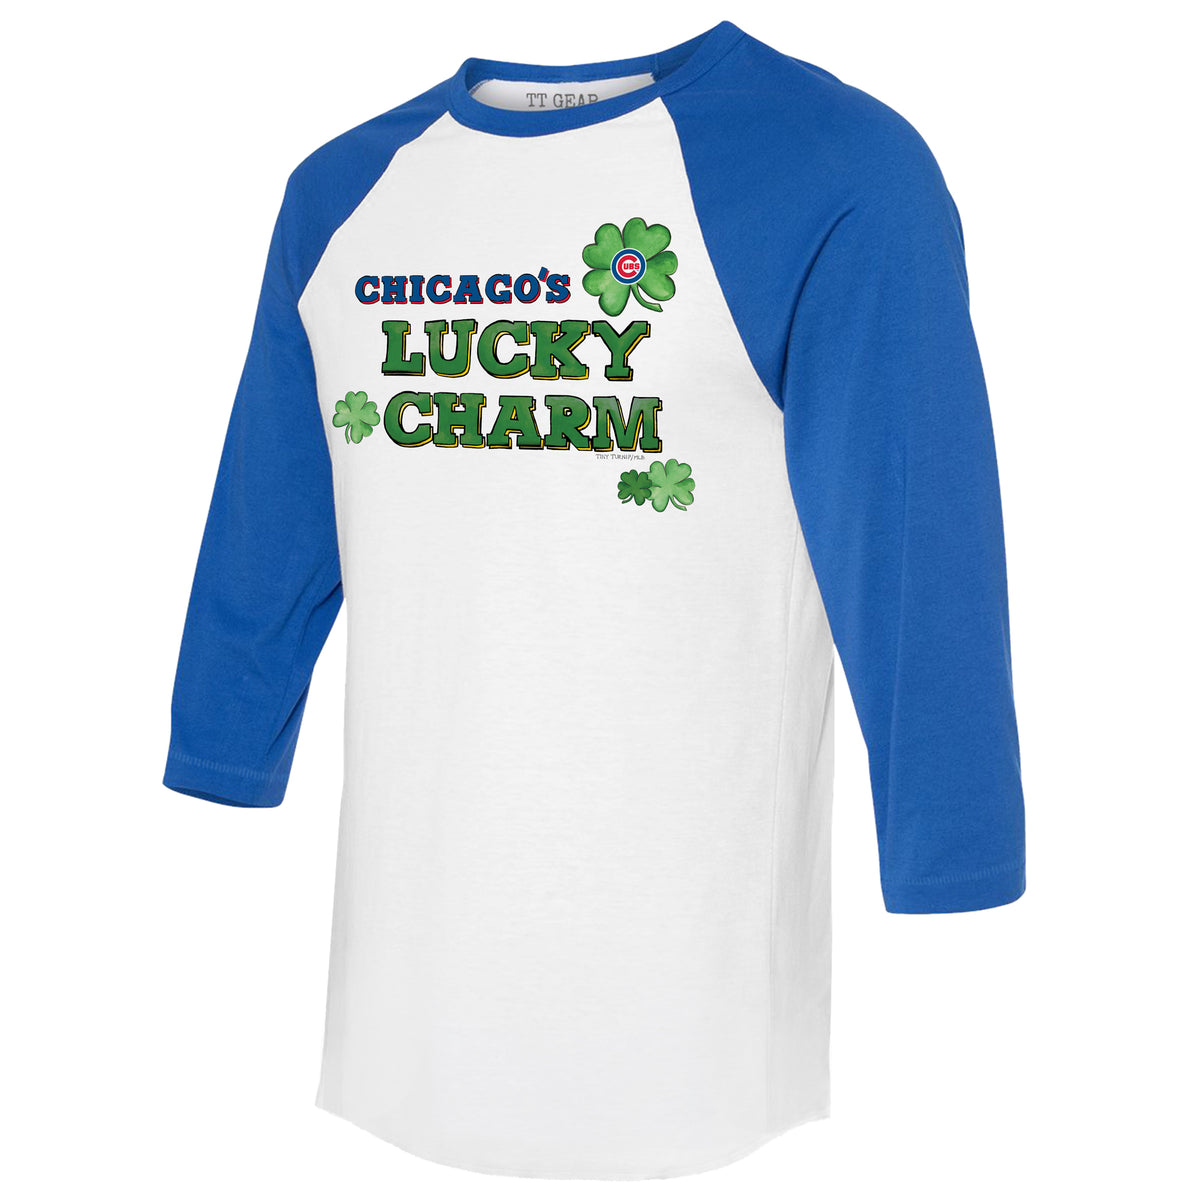 Chicago Cubs Lucky Charm 3/4 Royal Blue Sleeve Raglan